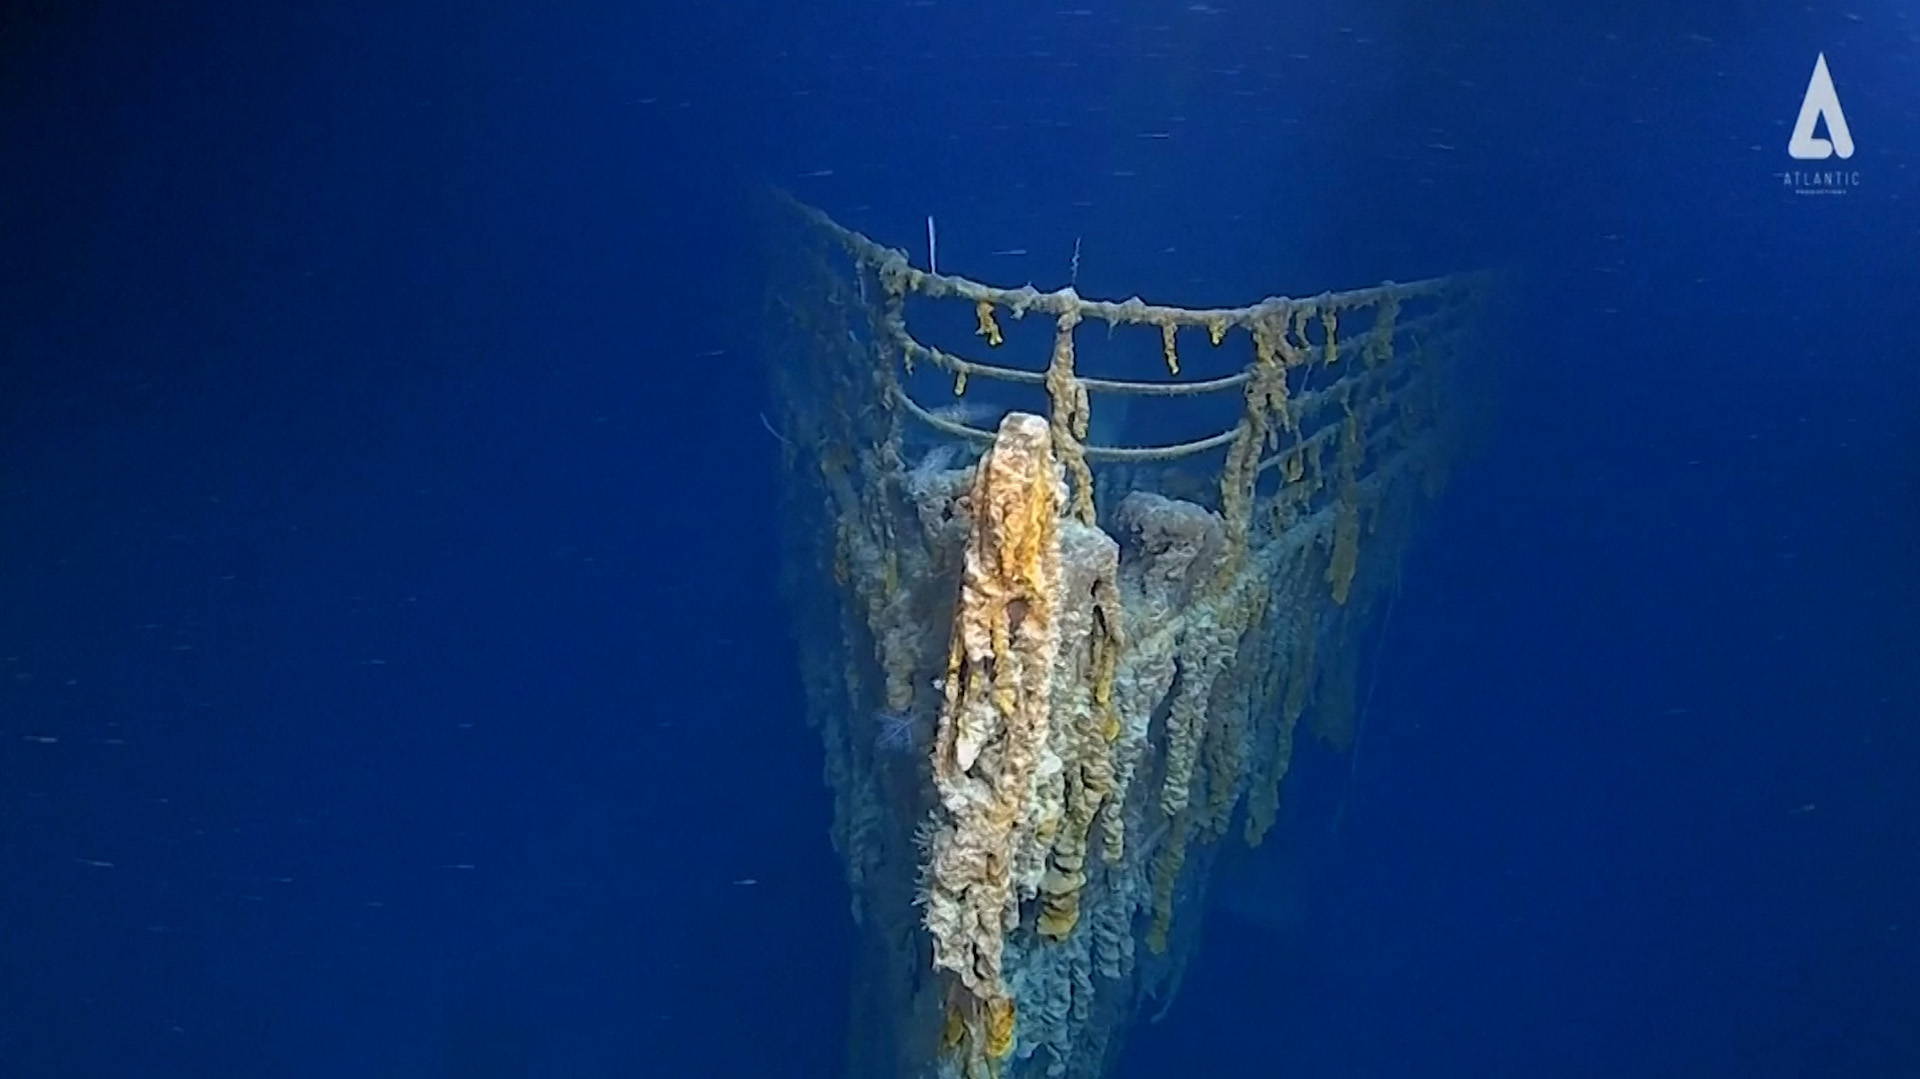 Imágenes inéditas del Titanic captadas por exploradores marinos